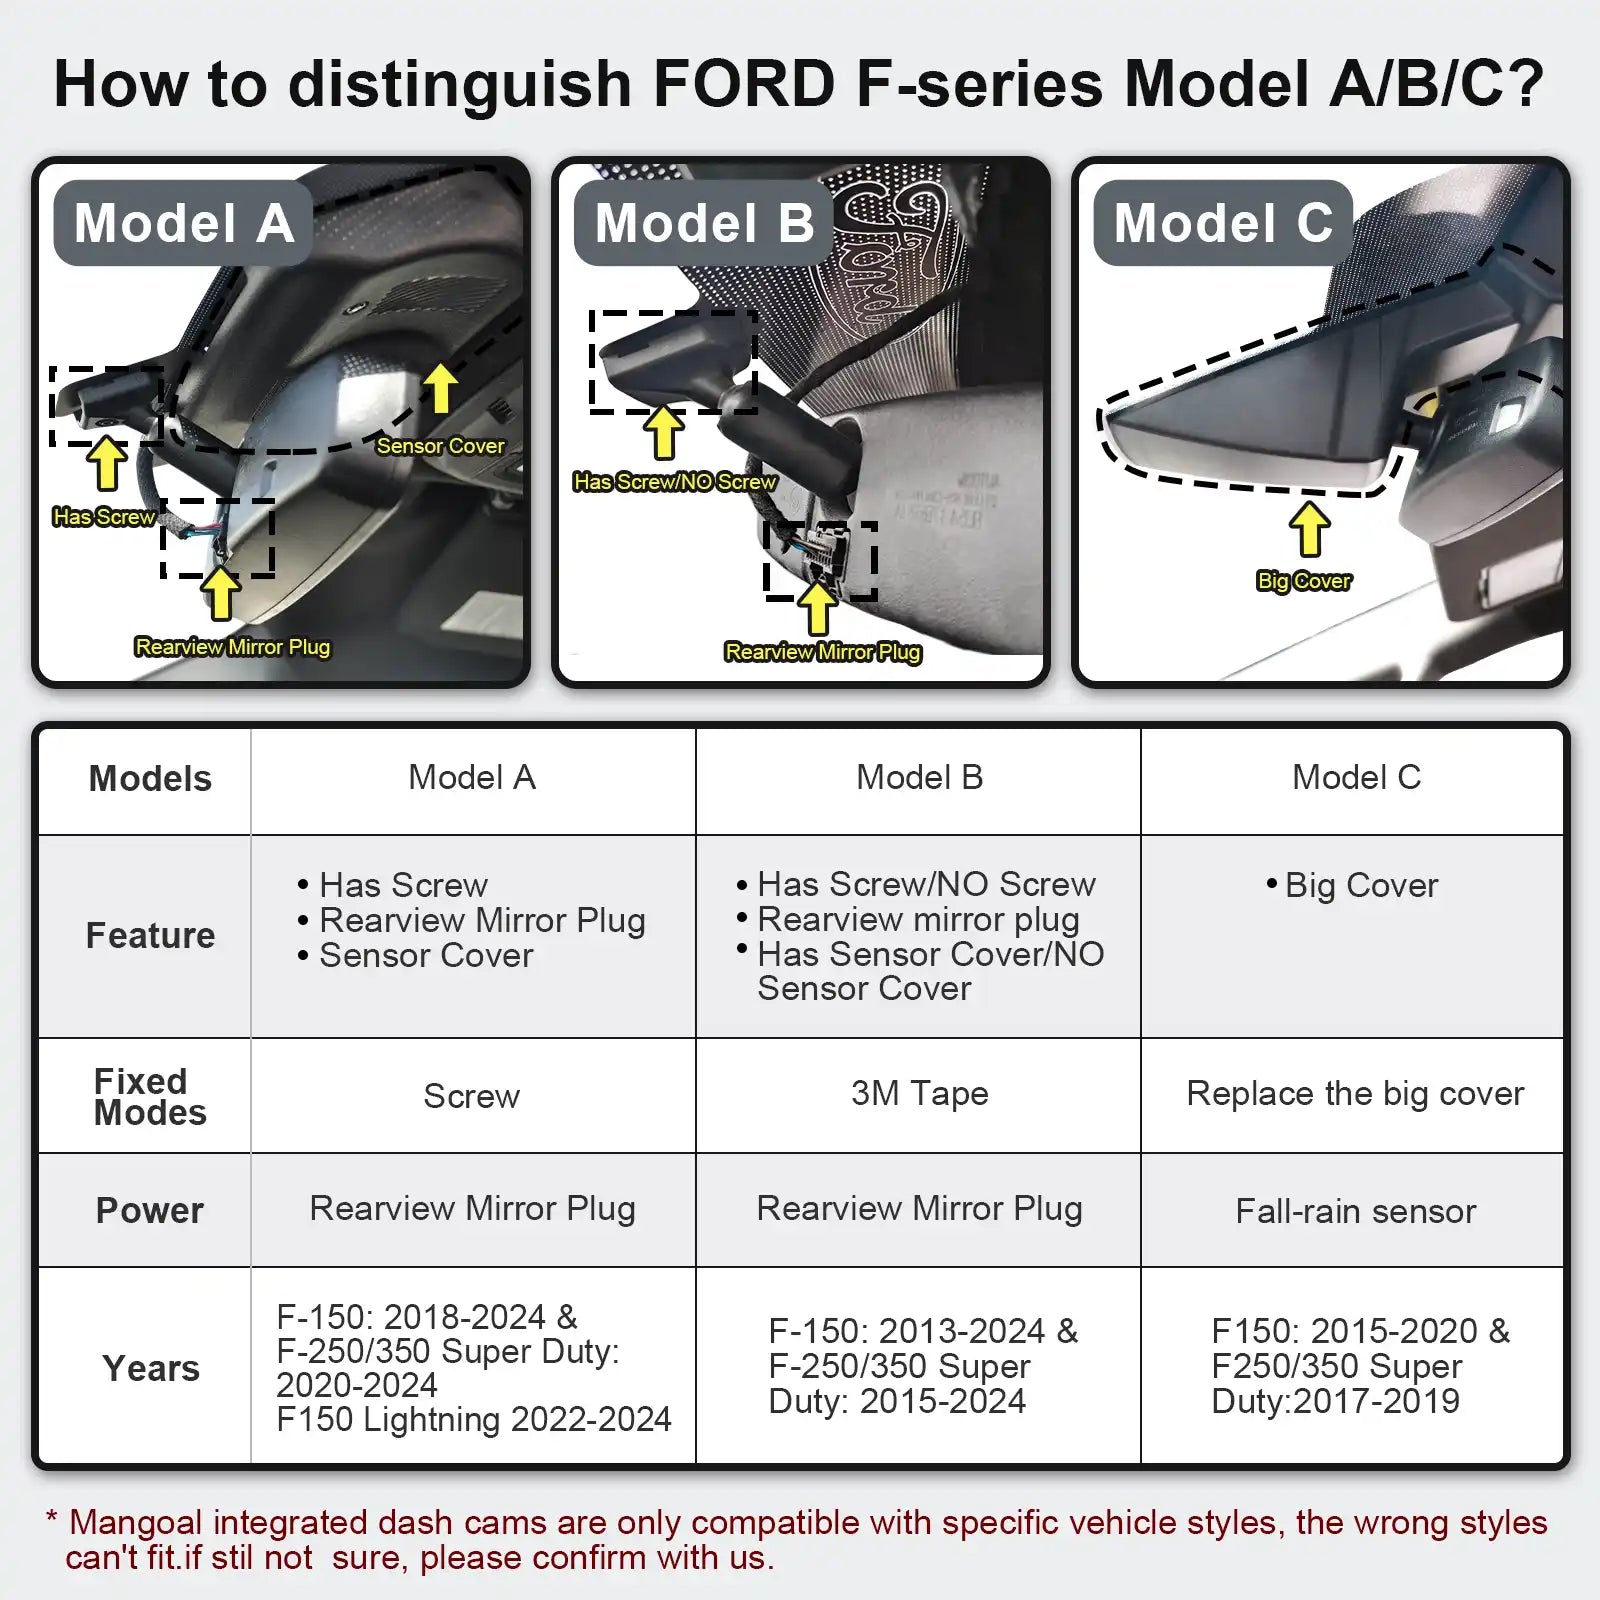 Ford F150/F250/F350 dash cam models A/B/C